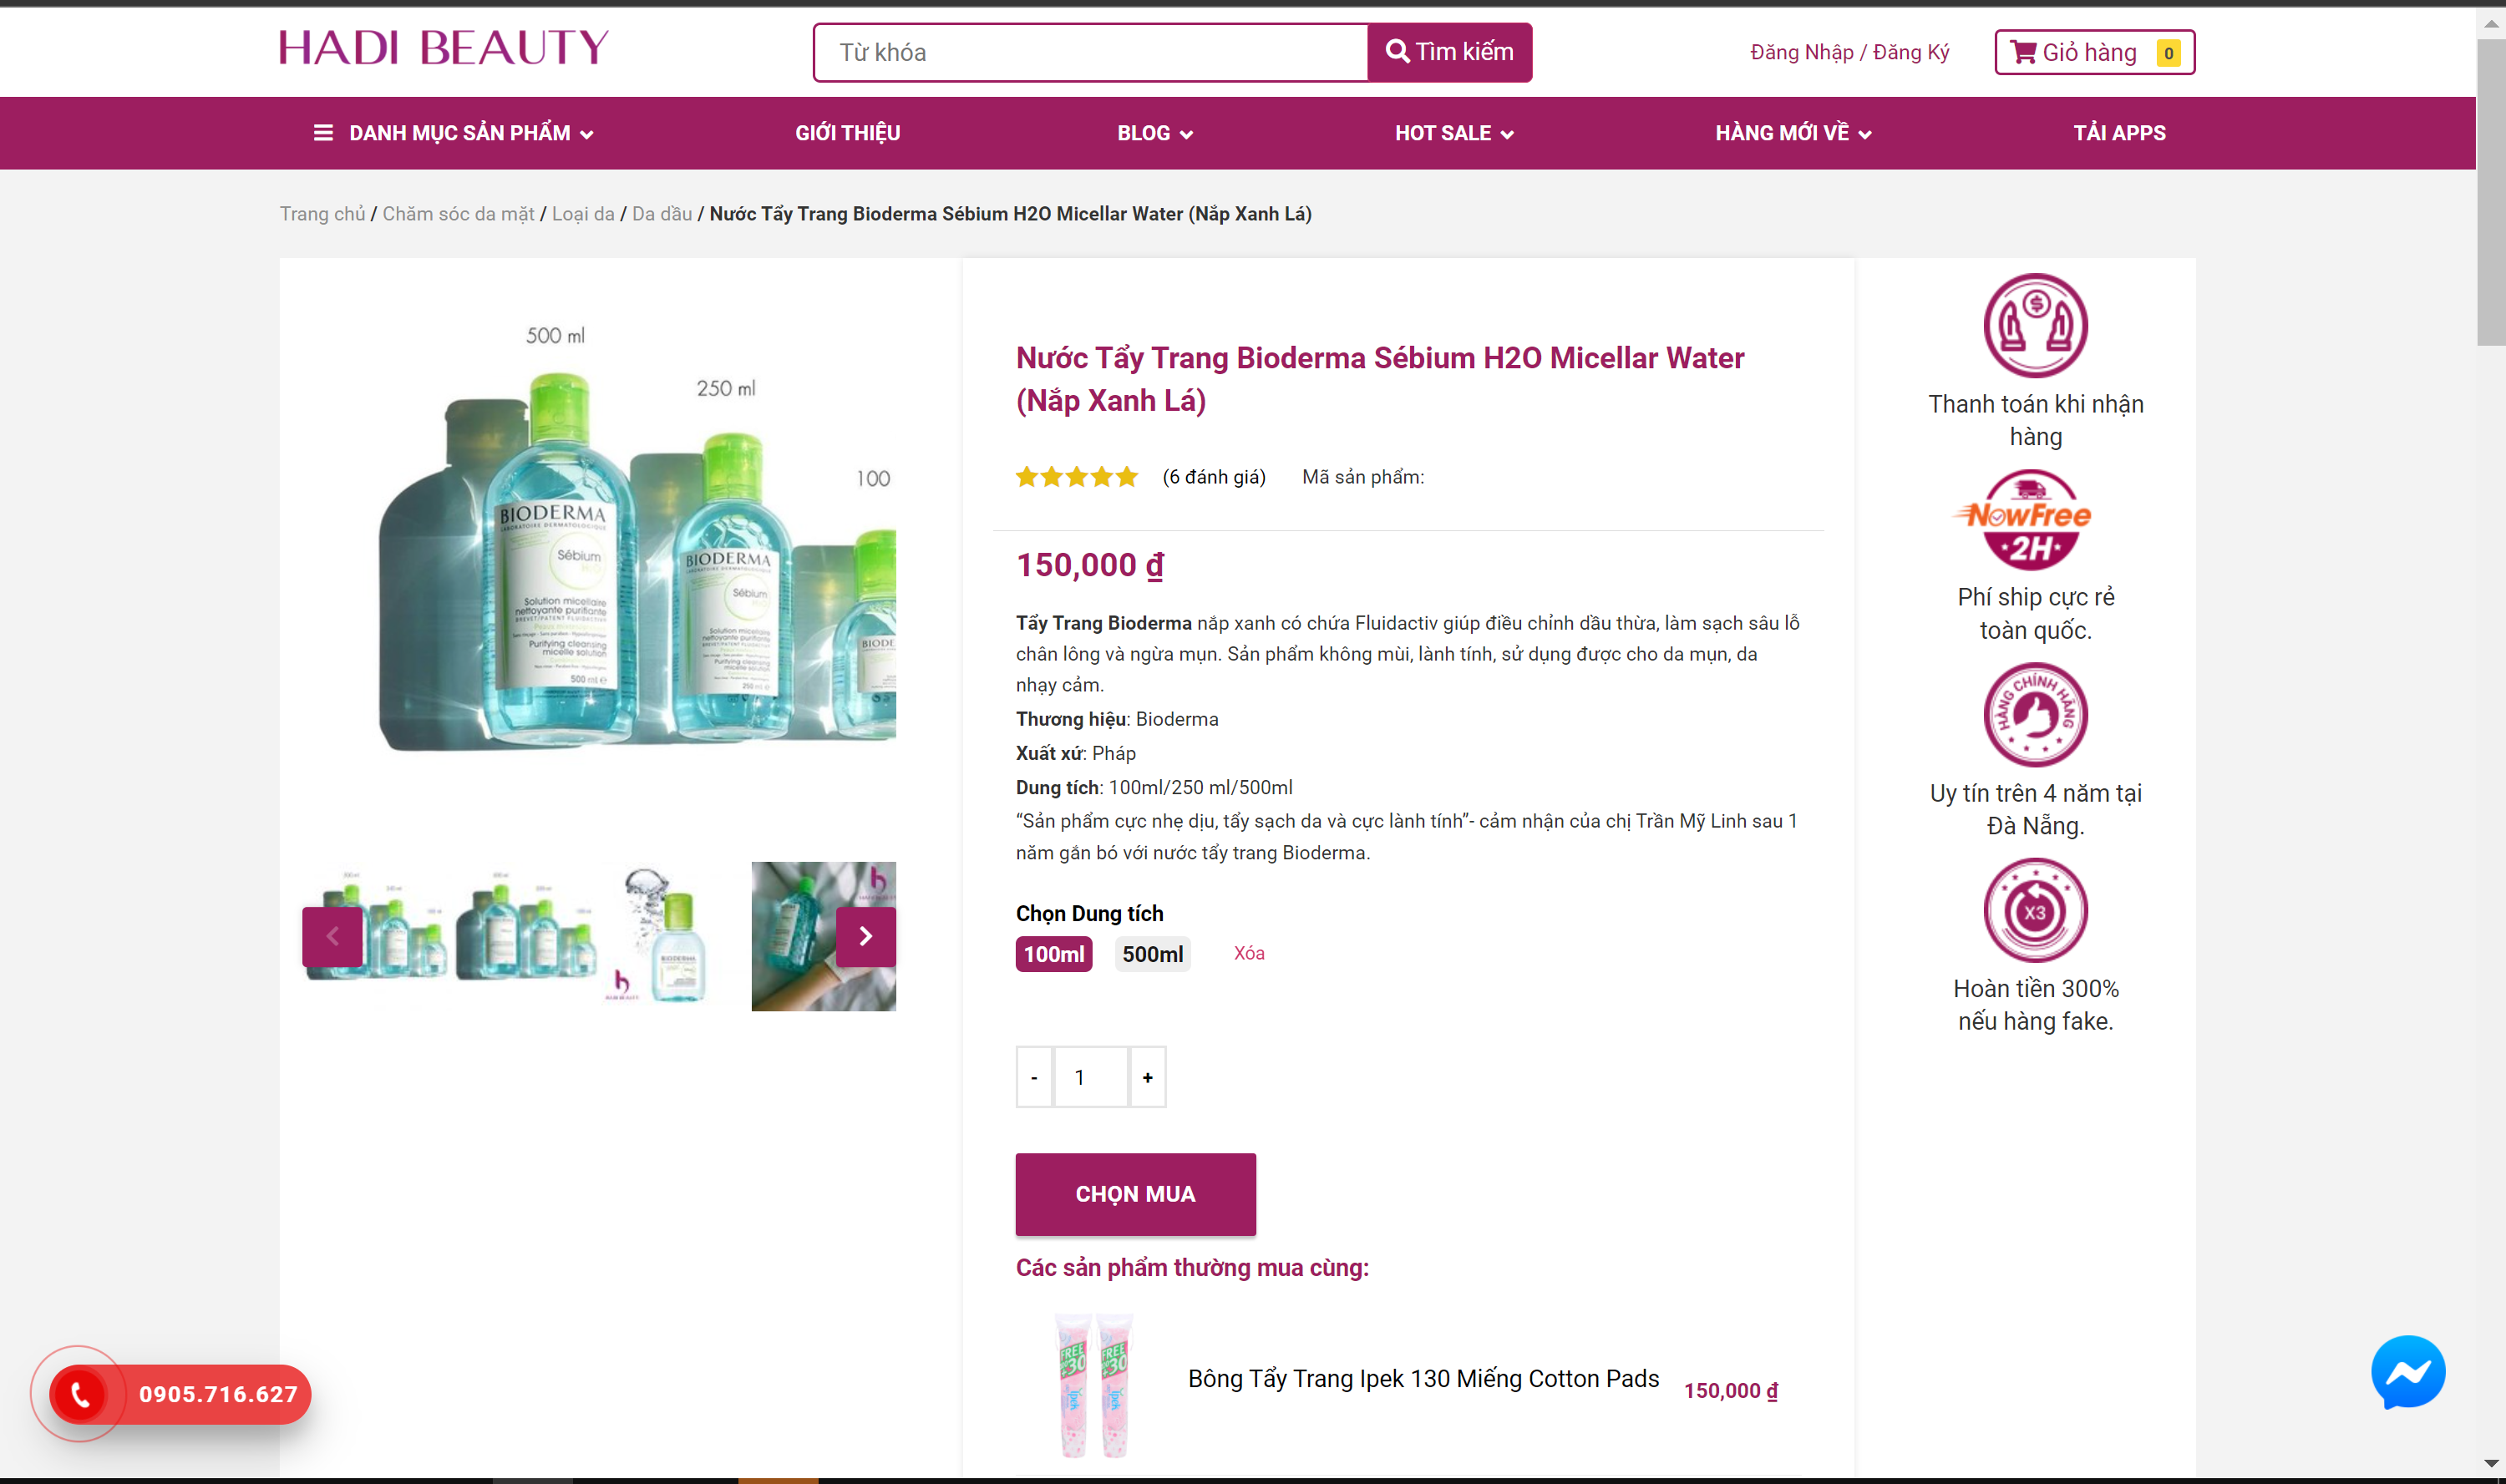 Tính năng đặt hàng, thêm vào giỏ hàng không thể thiếu khi thiết kế website mỹ phẩm, nước hoa